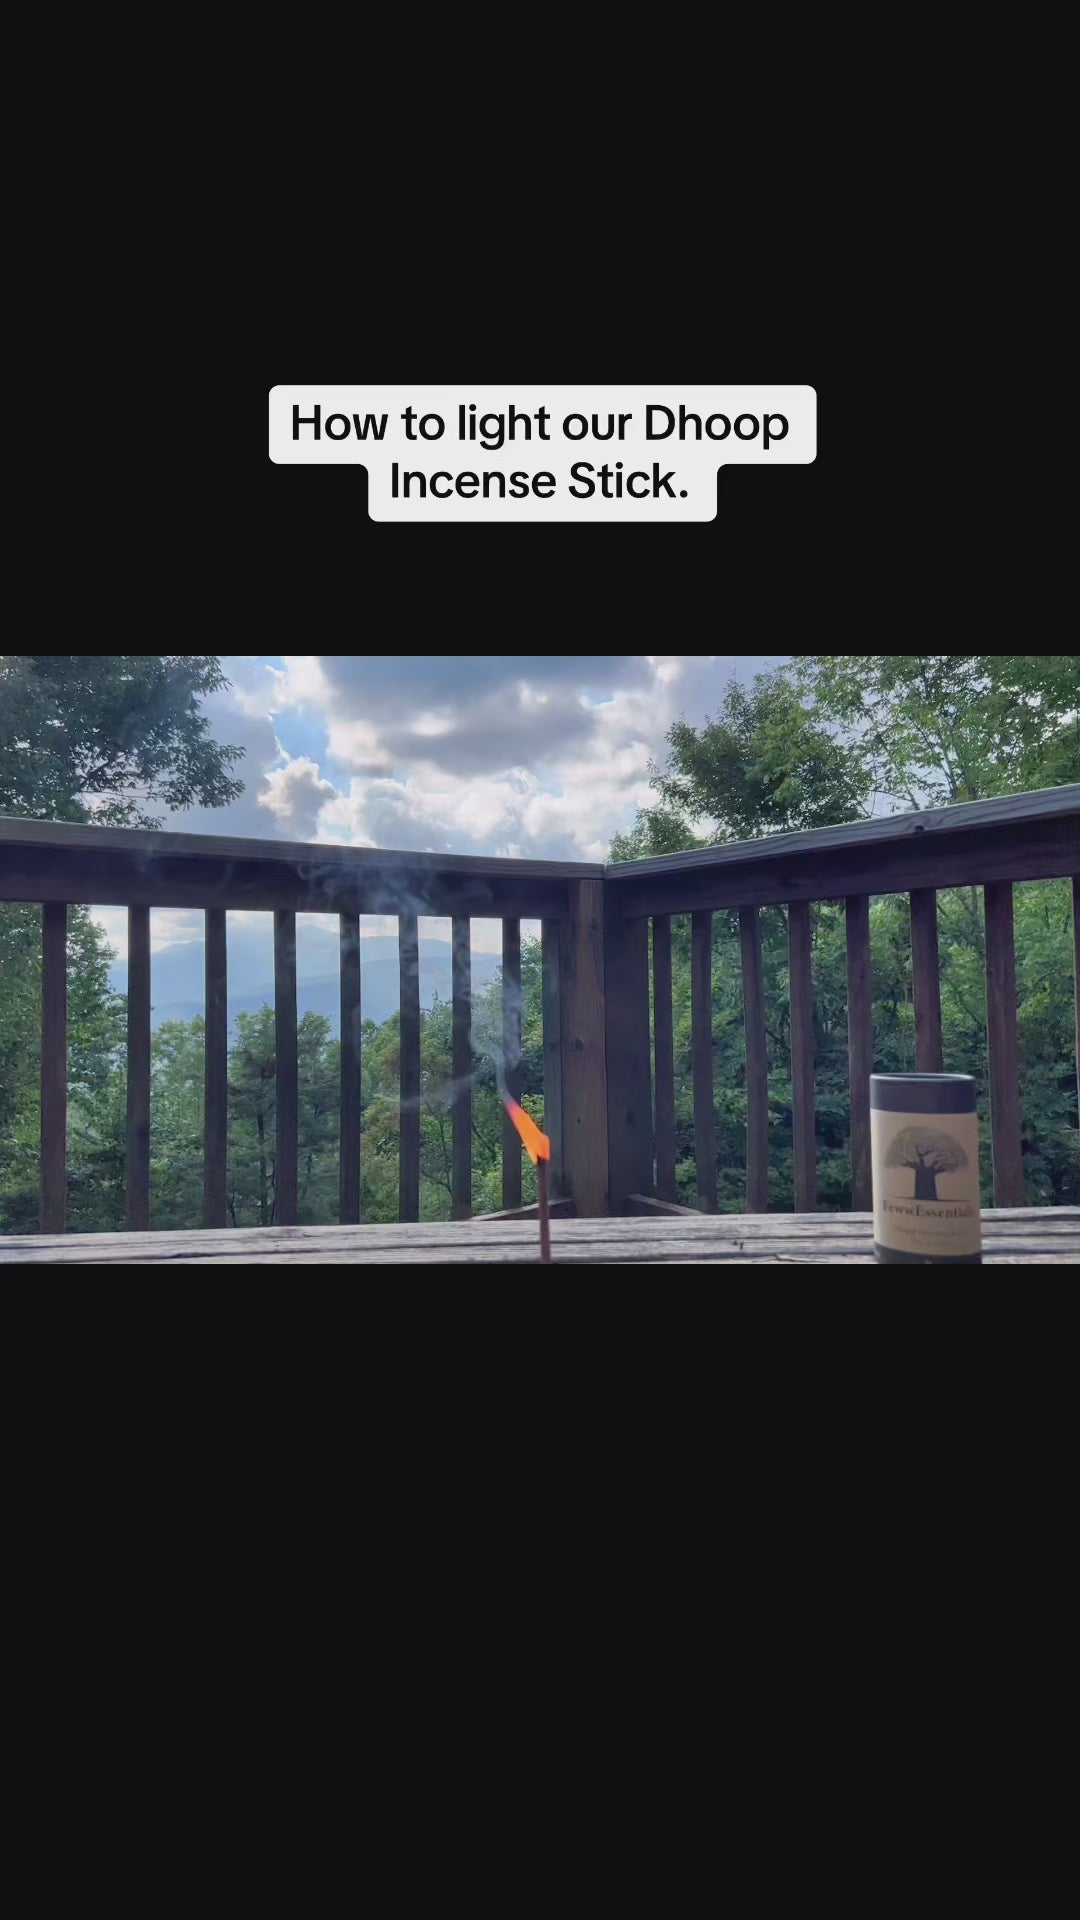 Dhoop Incense Sticks - Life